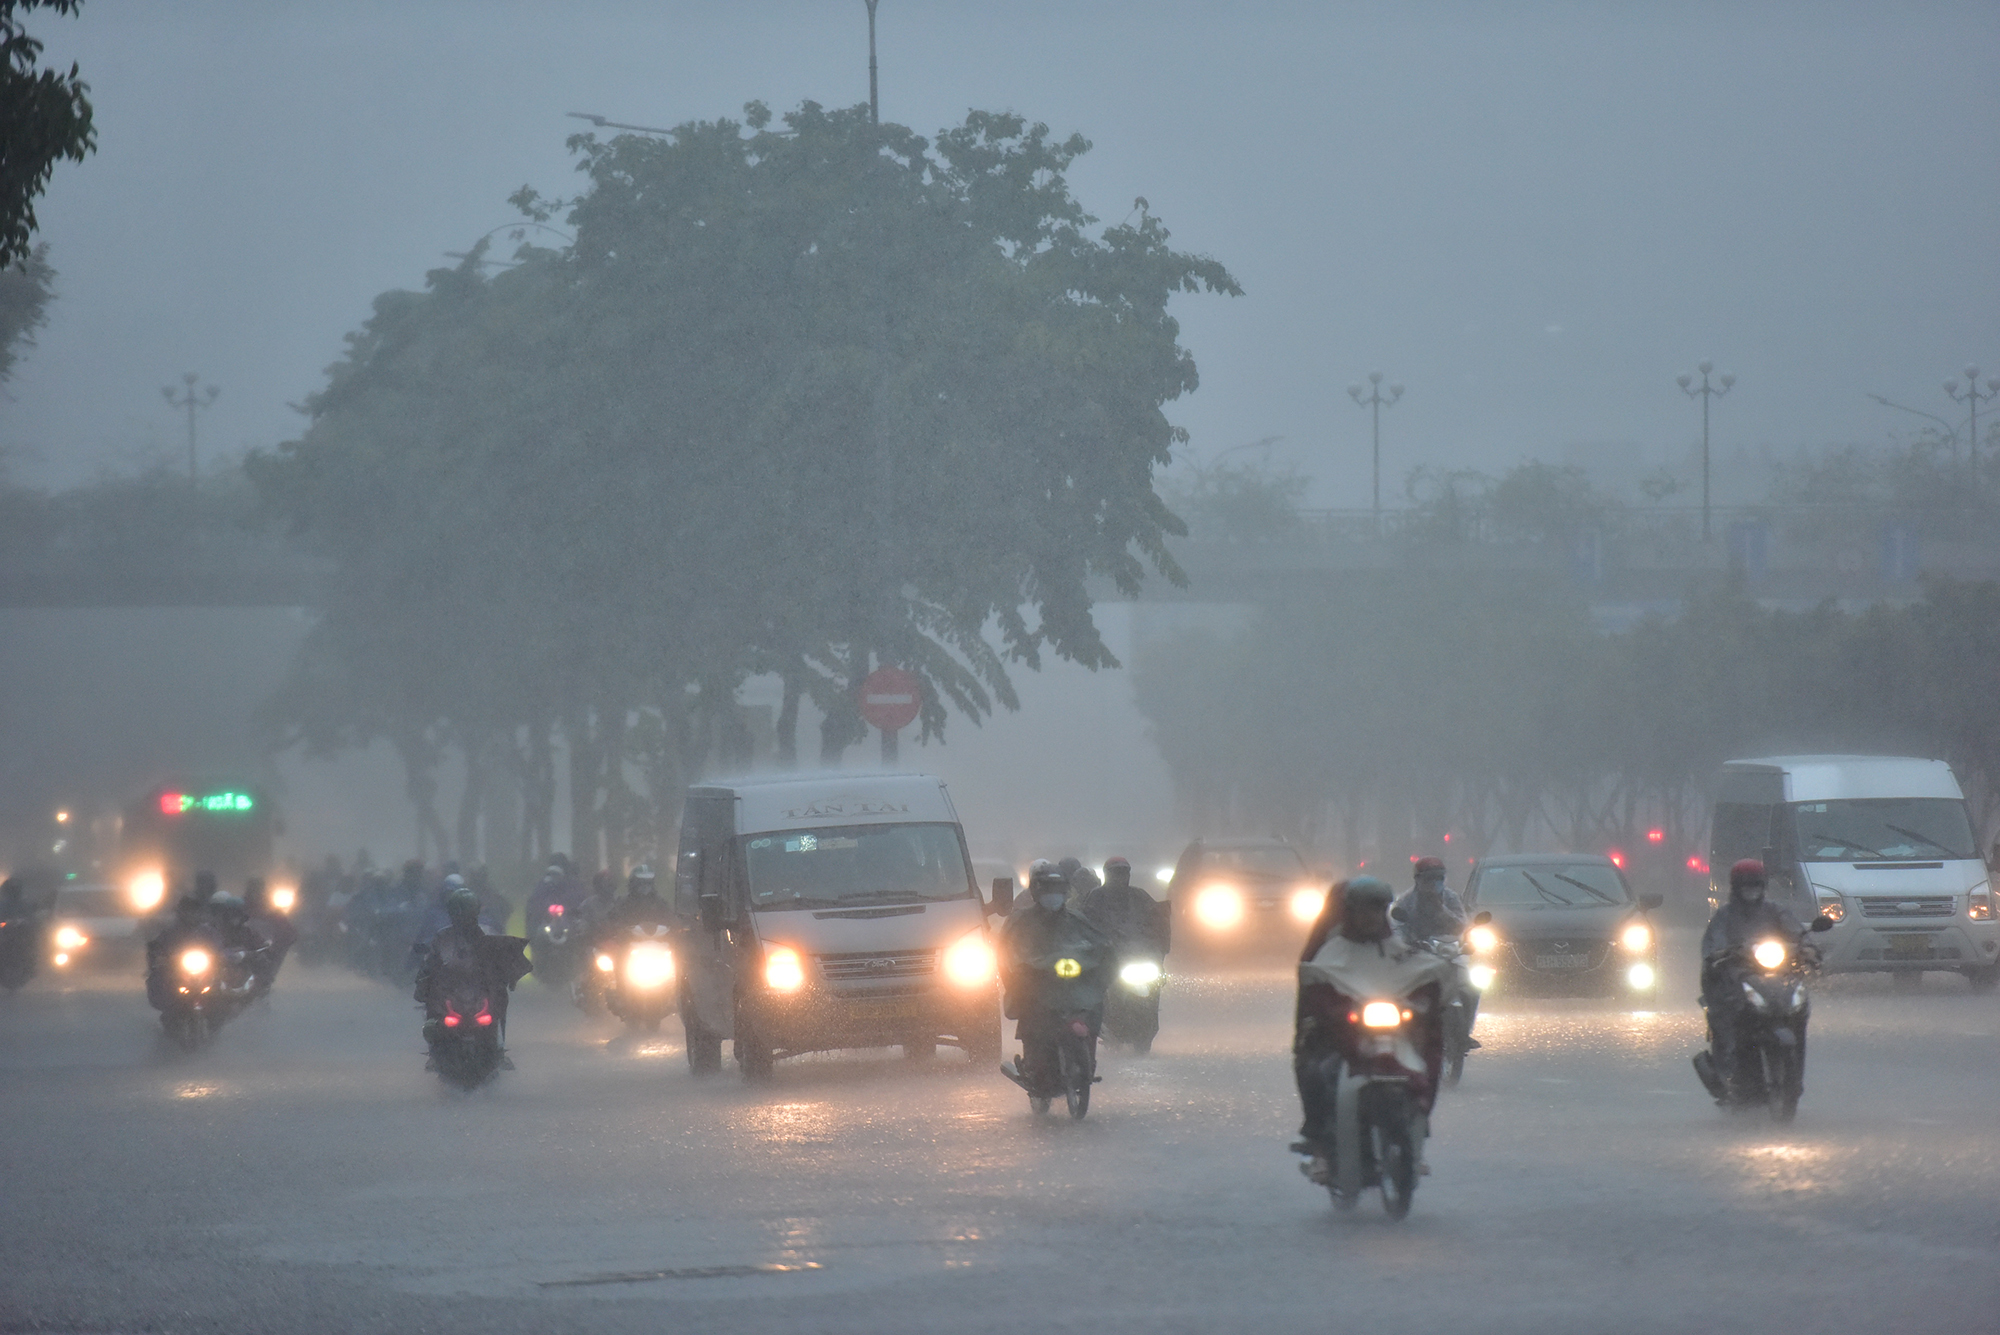 Khoảng 16h chiều&nbsp;27/5, cơn mưa lớn xảy ra trên diện rộng ở nhiều quận, huyện tại TP.HCM khiến bầu trời tối sầm. Trên đường Điện Biên Phủ, quận Bình Thạnh các phương tiện phải bật đèn pha để di chuyển.